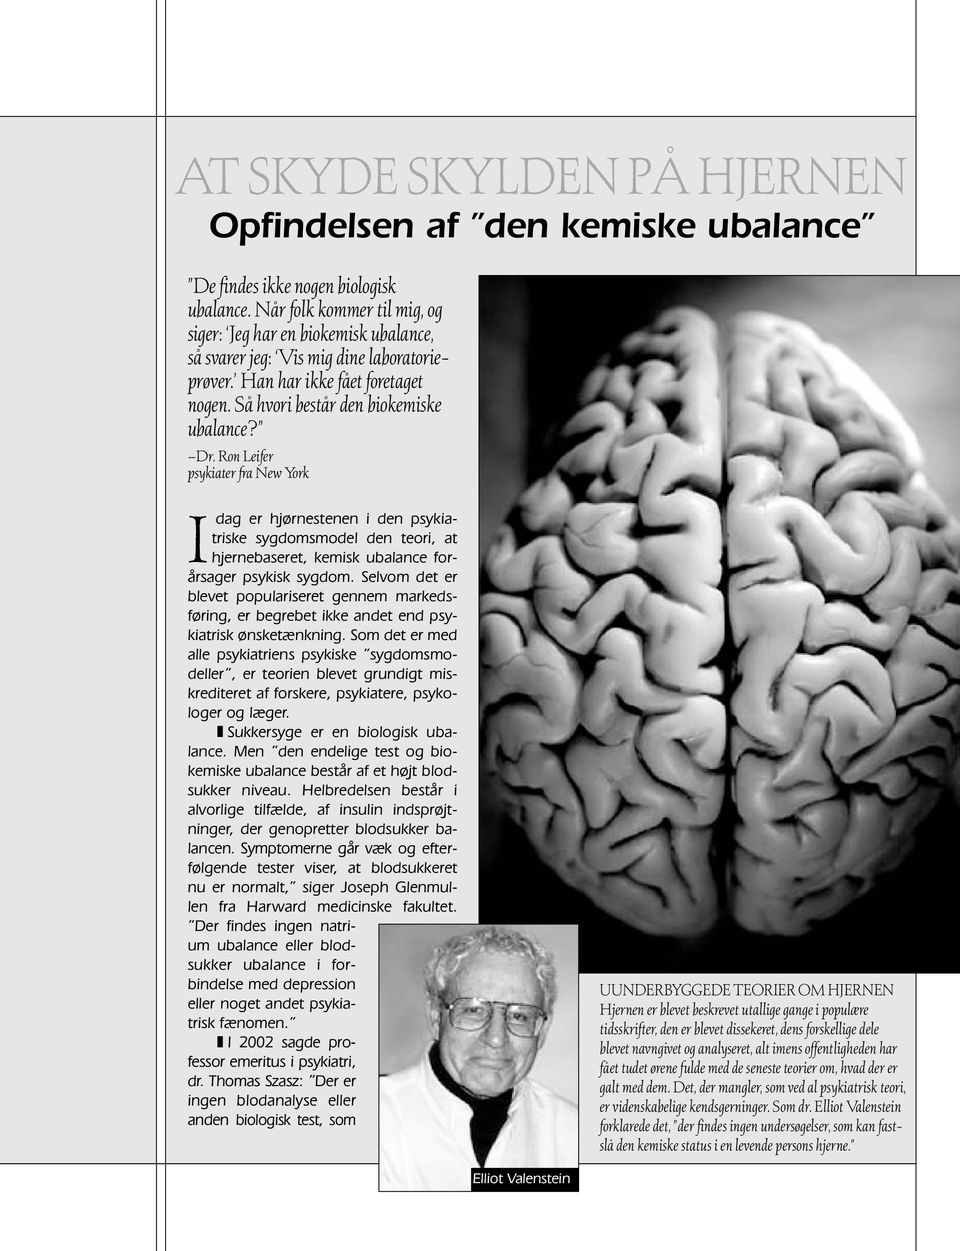 Ron Leifer psykiater fra New York I dag er hjørnestenen i den psykiatriske sygdomsmodel den teori, at hjernebaseret, kemisk ubalance forårsager psykisk sygdom.